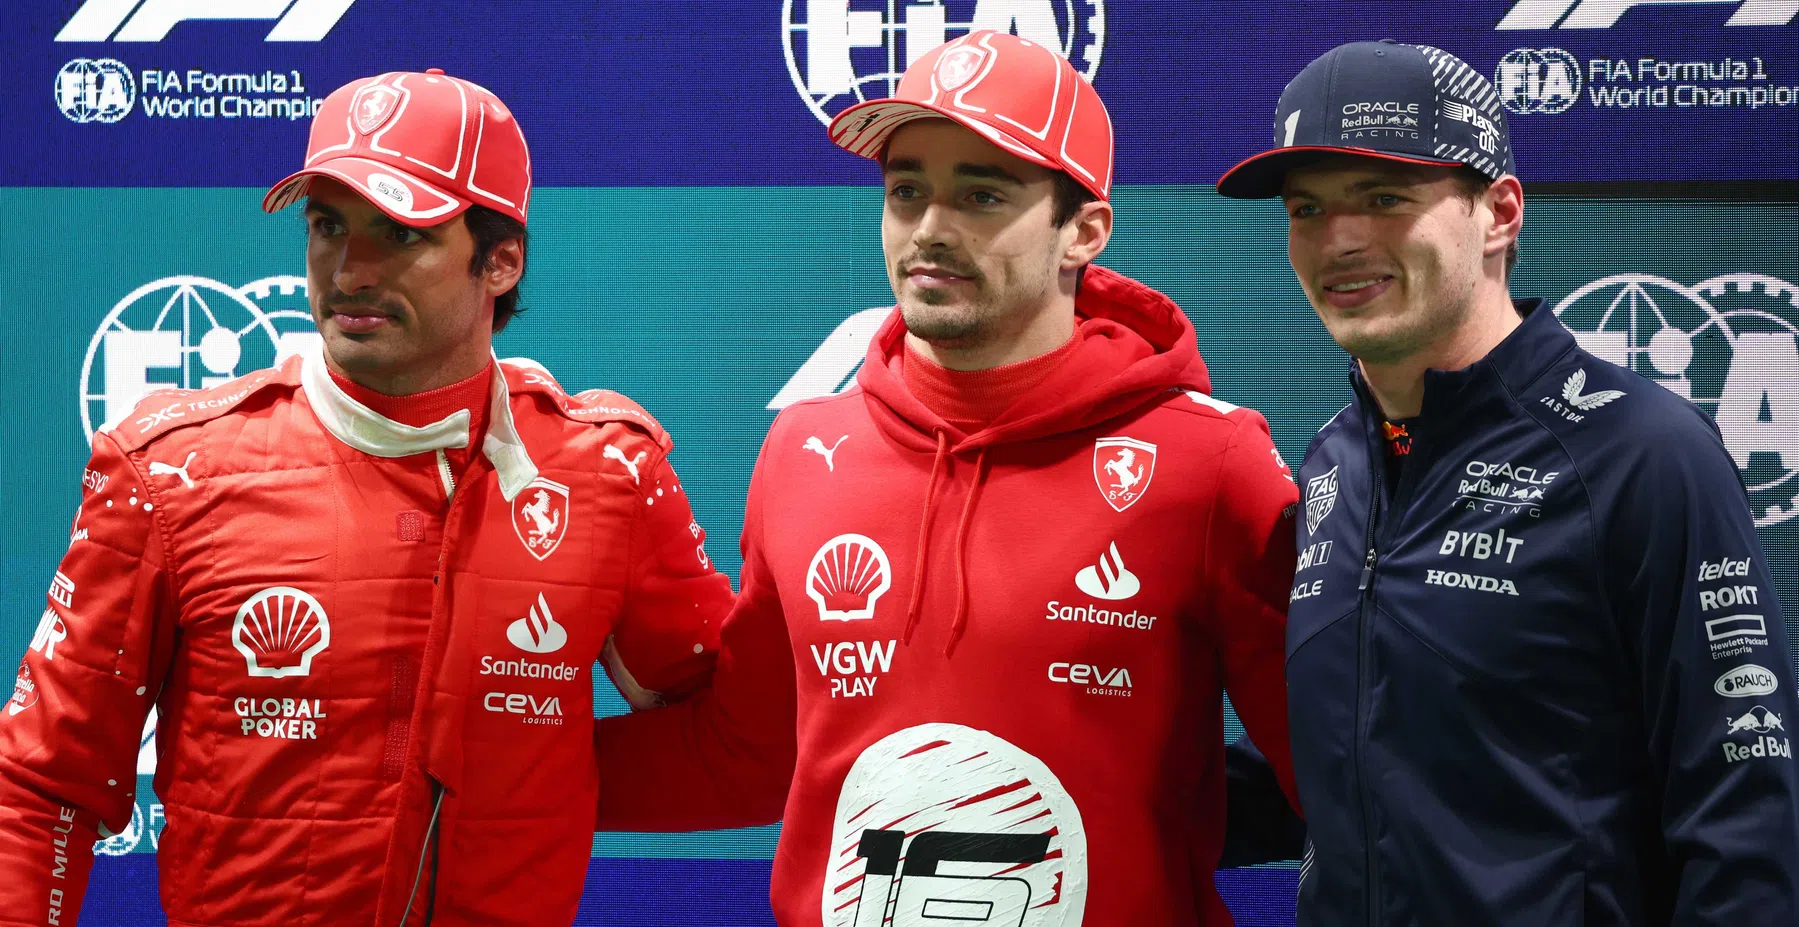 Definitieve startopstelling | Leclerc en Verstappen vooraan, Sainz bestraft